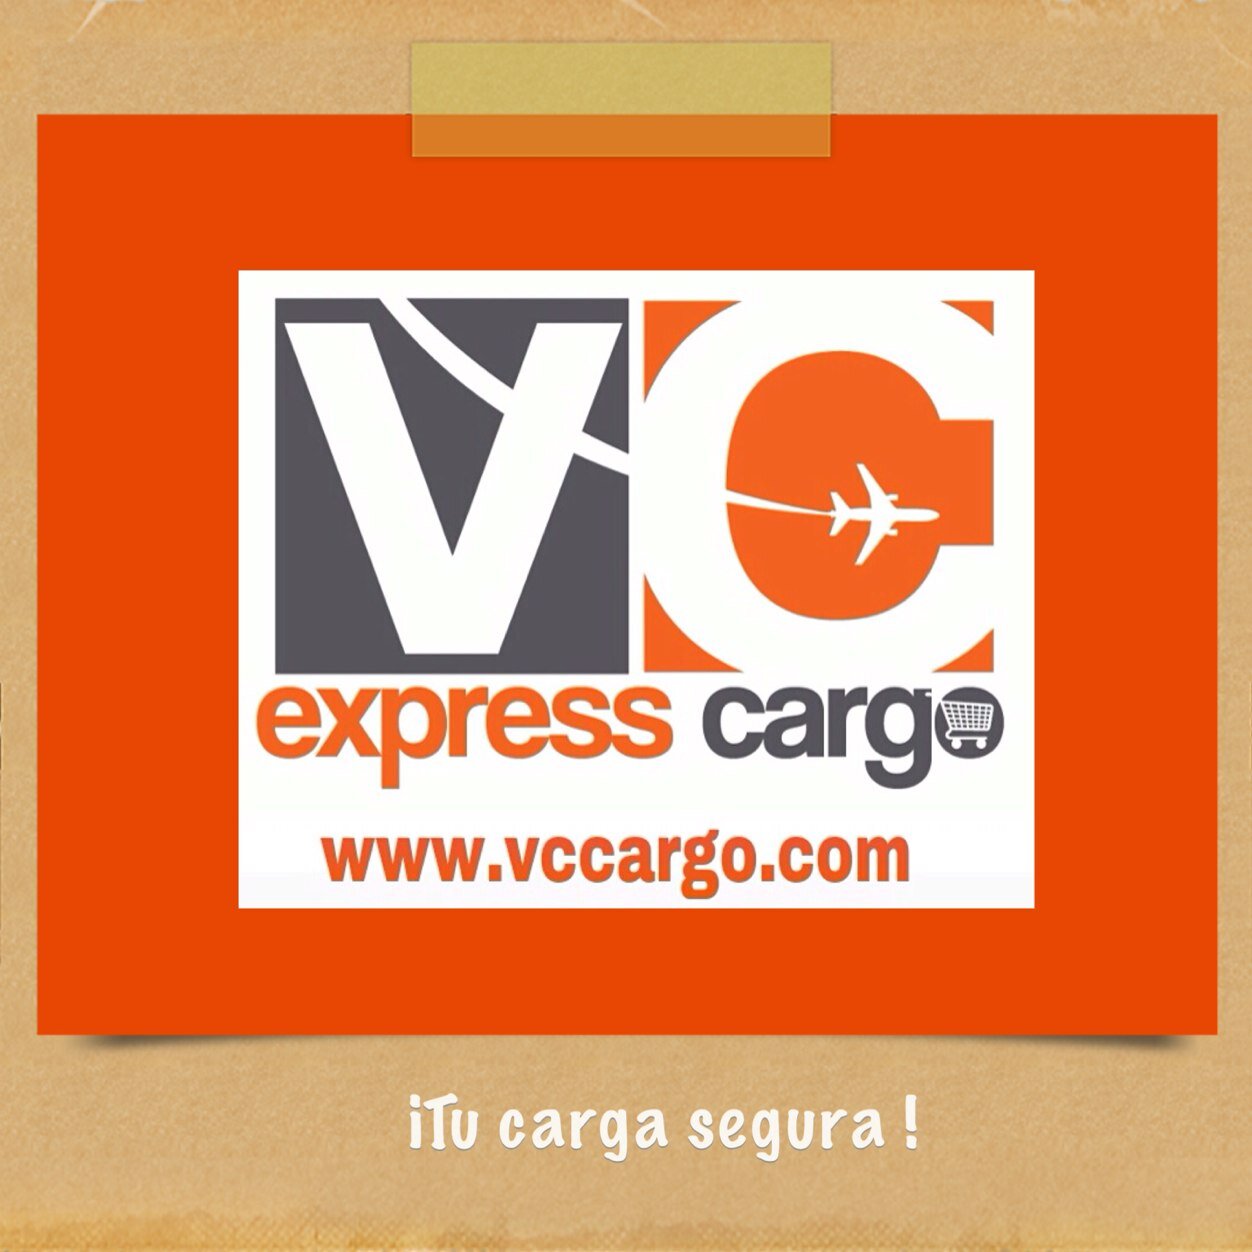 Somos una empresa con servicio de courier express.
Envíos aéreos desde Miami para Venezuela - Panamá - Colombia - Rep. Dominicana.